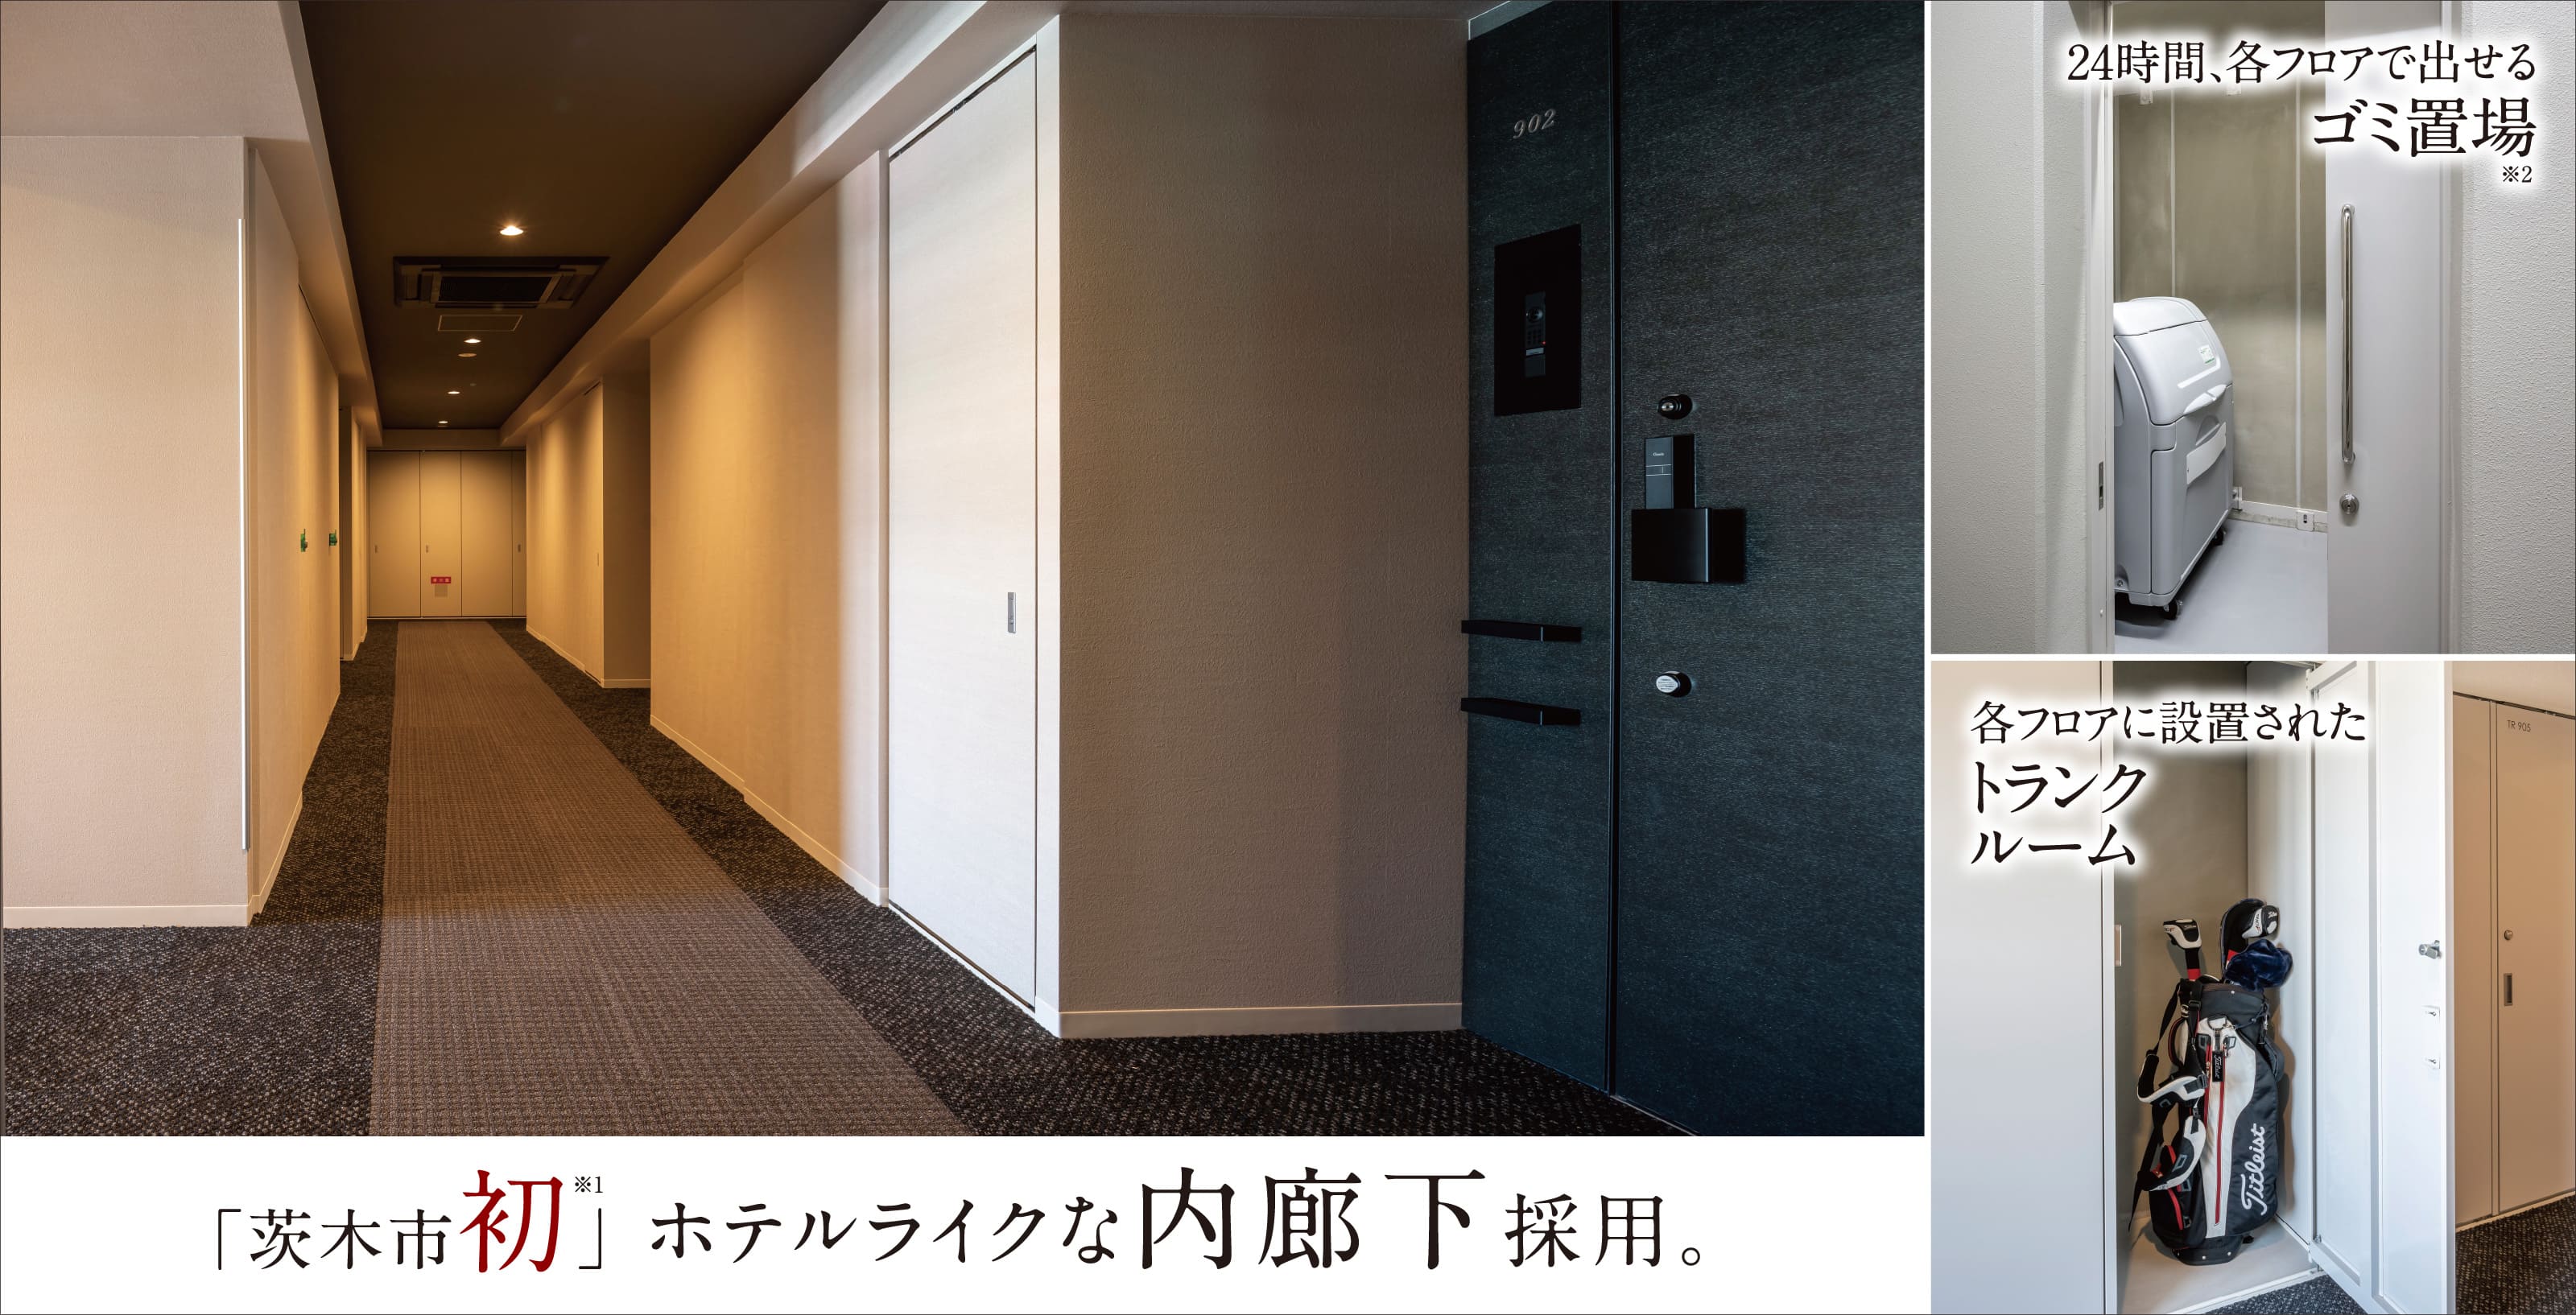 24時間、各フロアで出せるゴミ置場※2 各フロアに設置されたトランクルーム 「茨木市初」※1ホテルライクな内廊下採用。